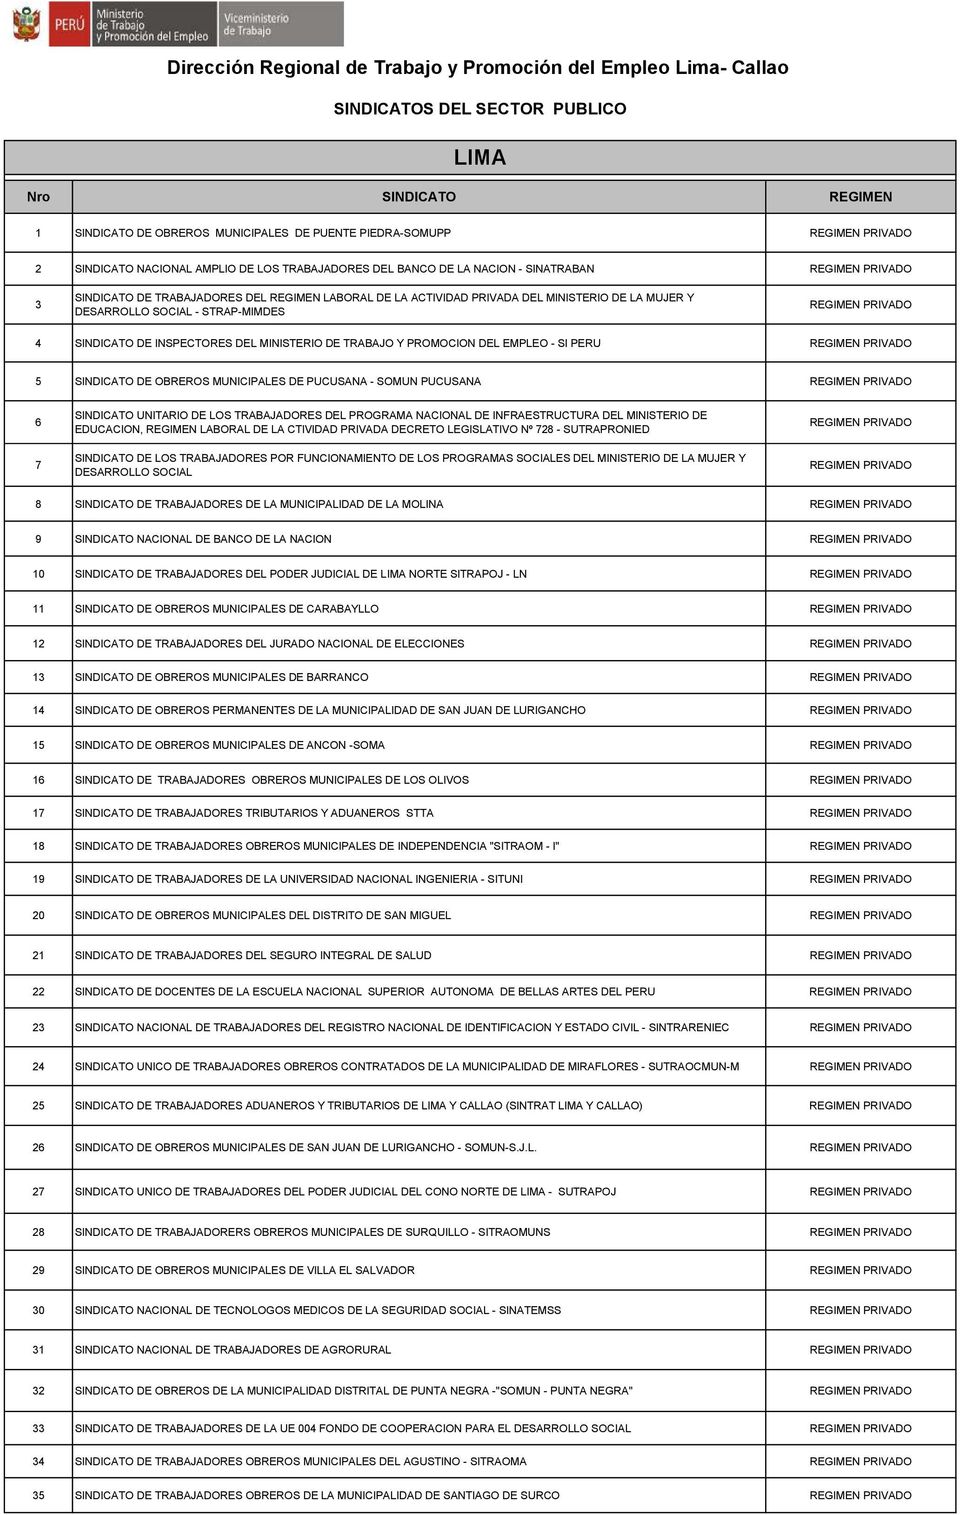 SINDICATO DE OBREROS MUNICIPALES DE PUCUSANA - SOMUN PUCUSANA 6 7 SINDICATO UNITARIO DE LOS TRABAJADORES DEL PROGRAMA NACIONAL DE INFRAESTRUCTURA DEL MINISTERIO DE EDUCACION, REGIMEN LABORAL DE LA